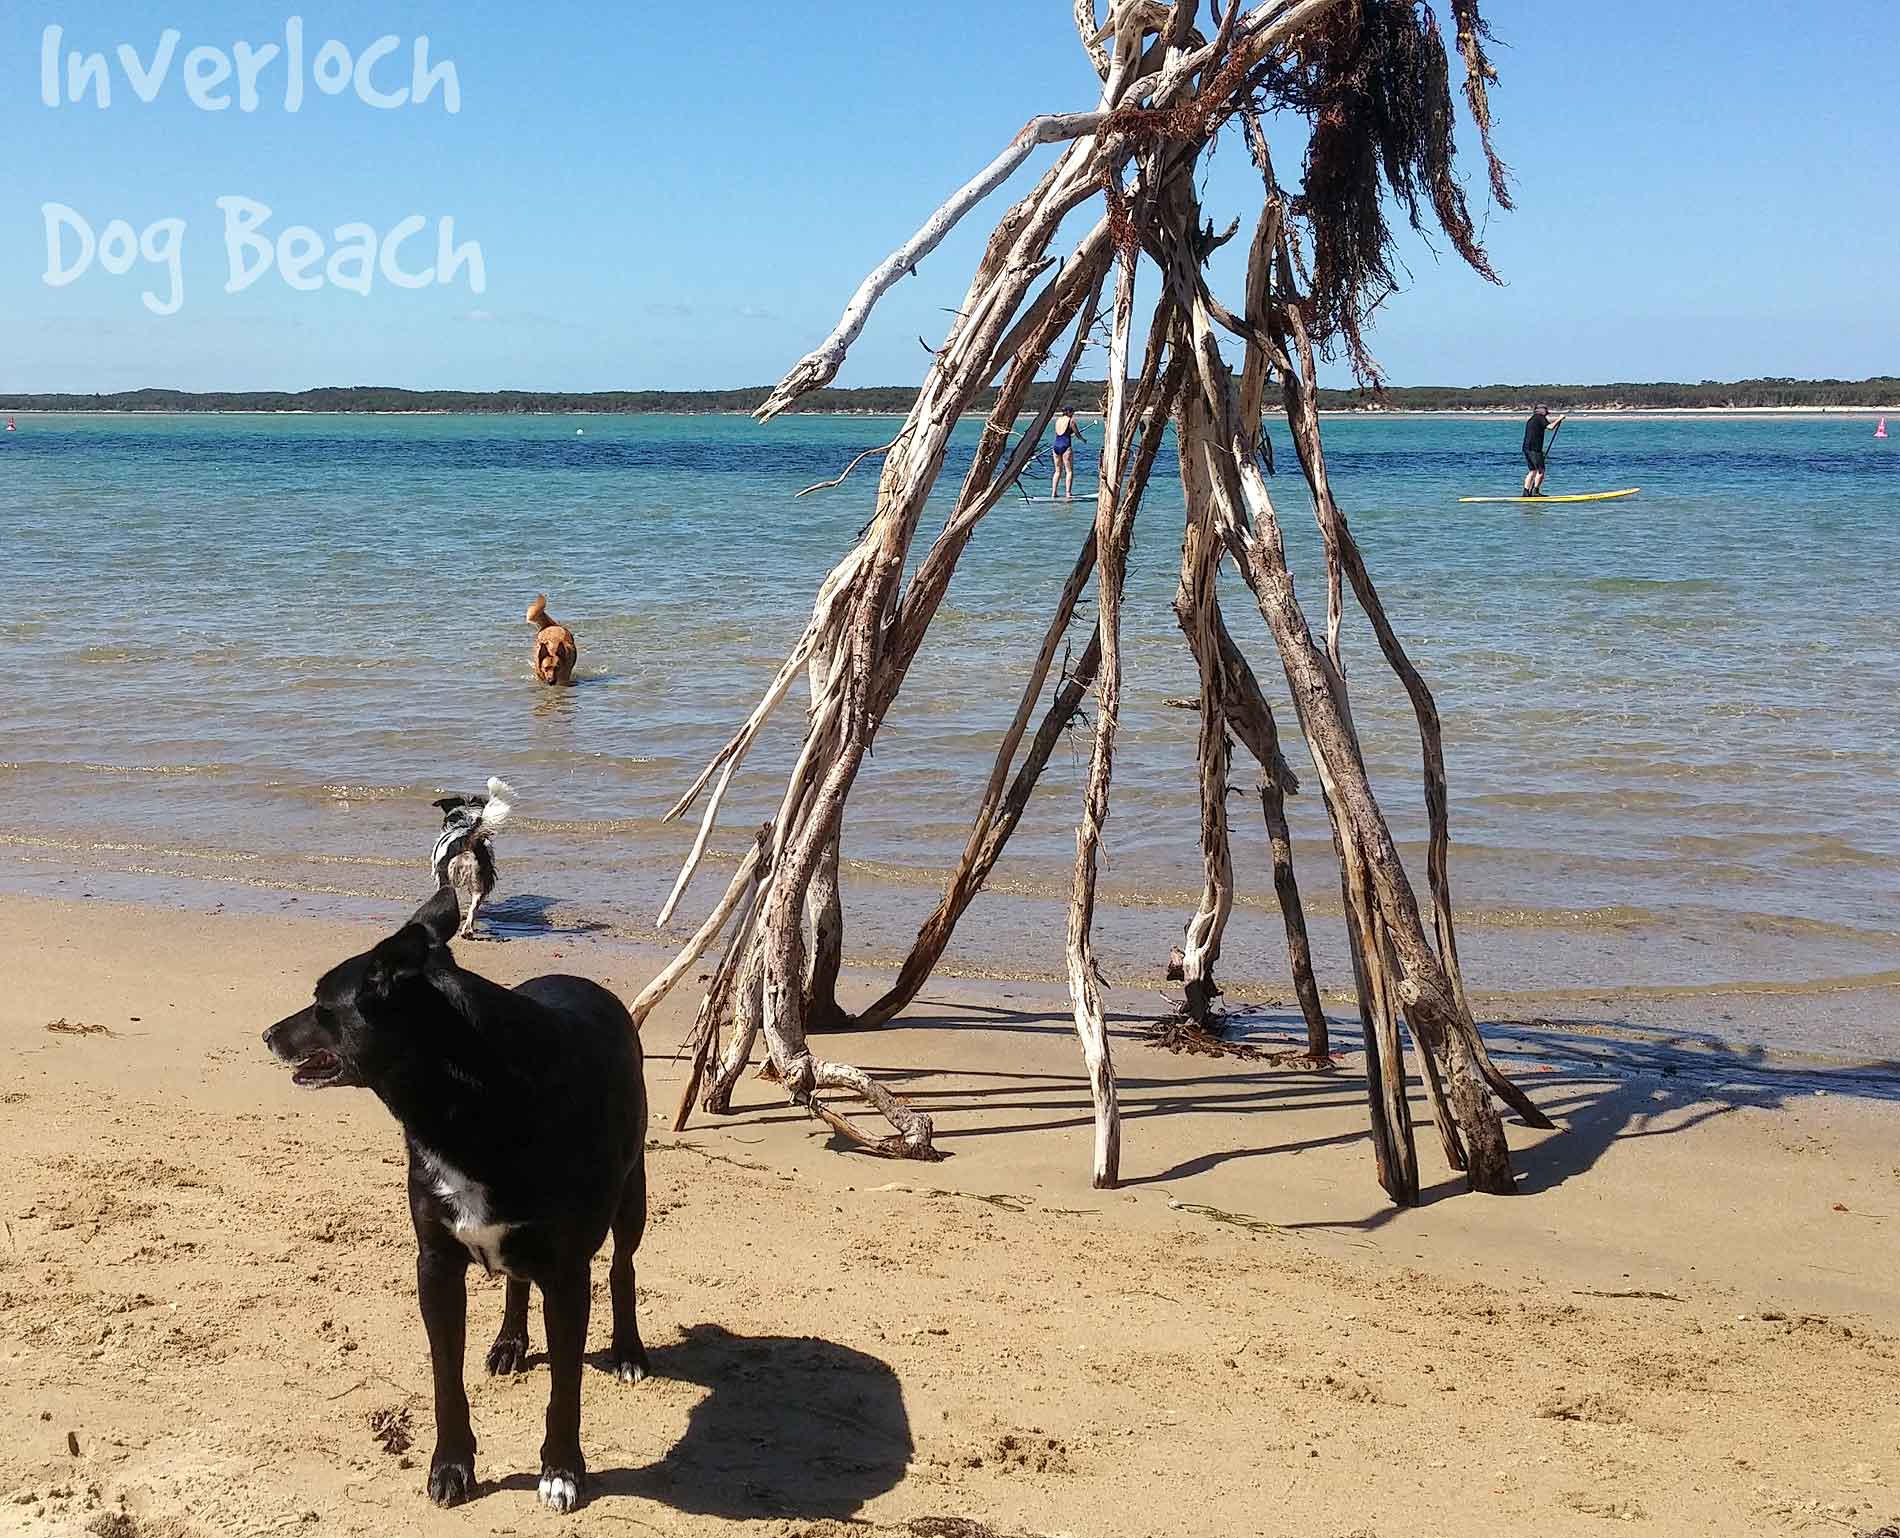 Inverloch - Dog Beach